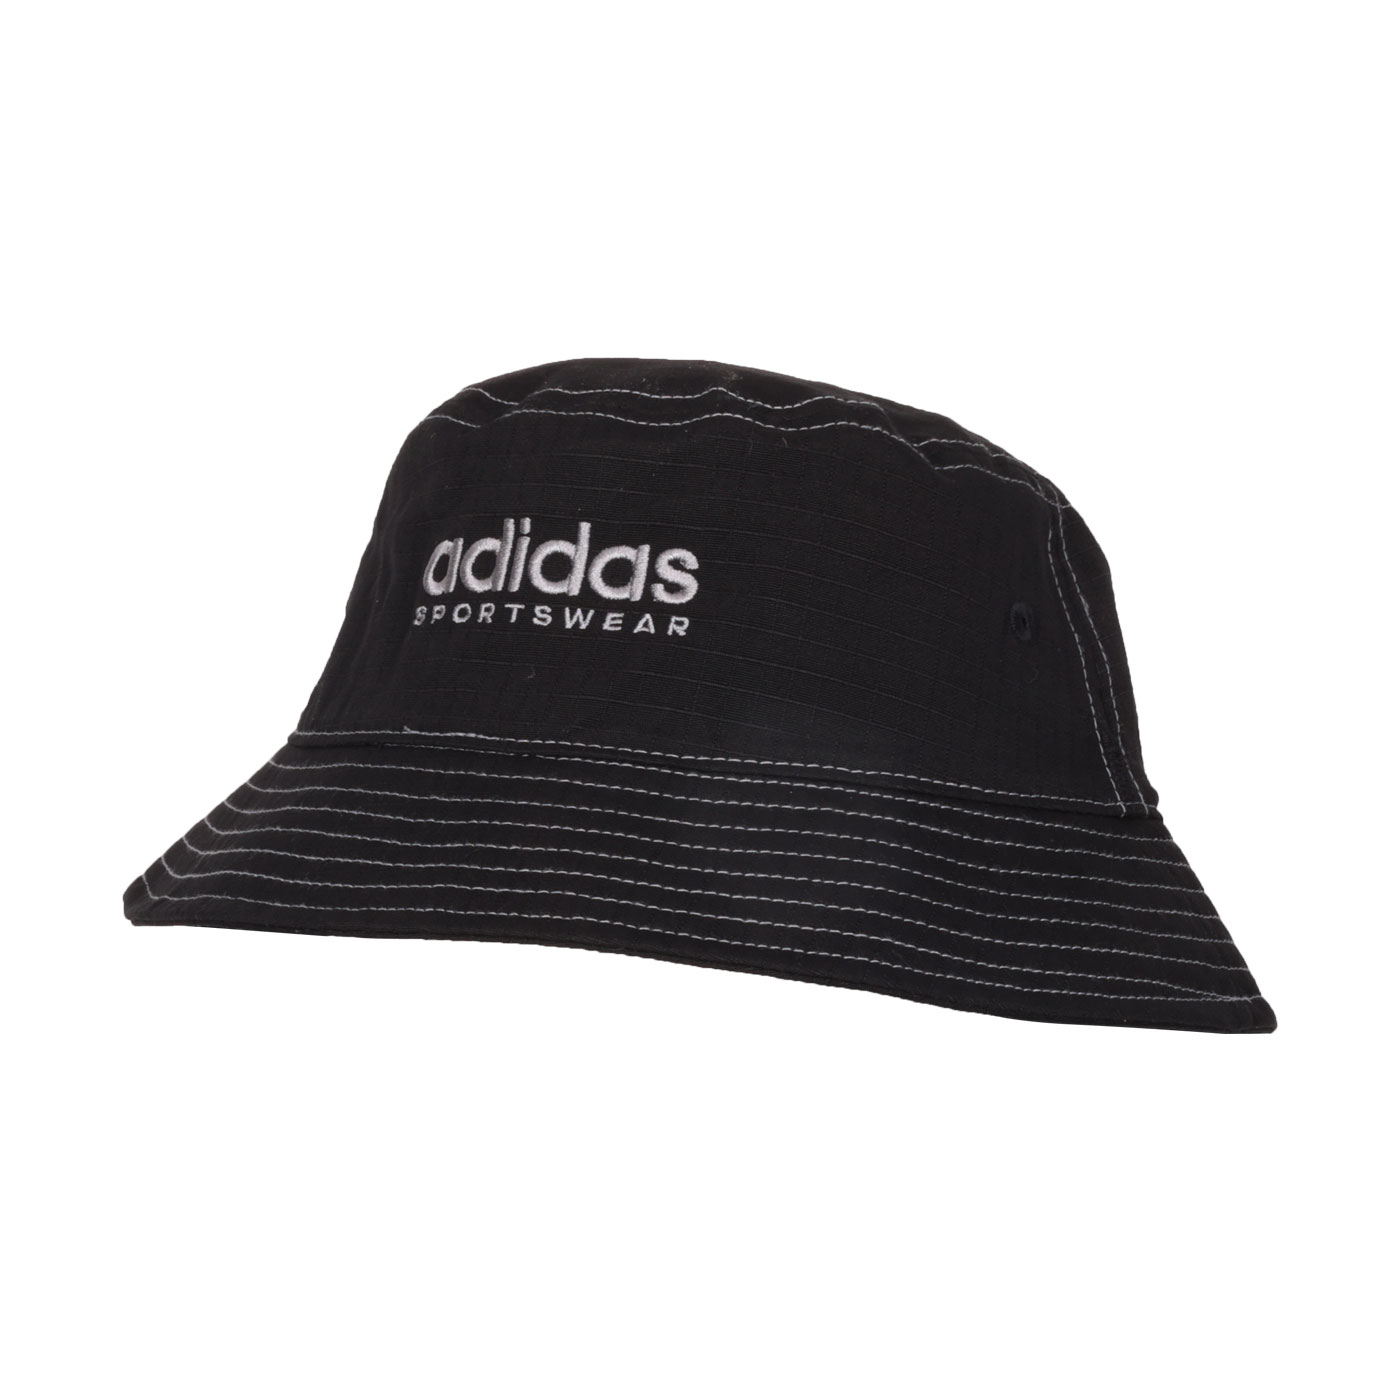 ADIDAS 漁夫帽  HY4318 - 黑灰